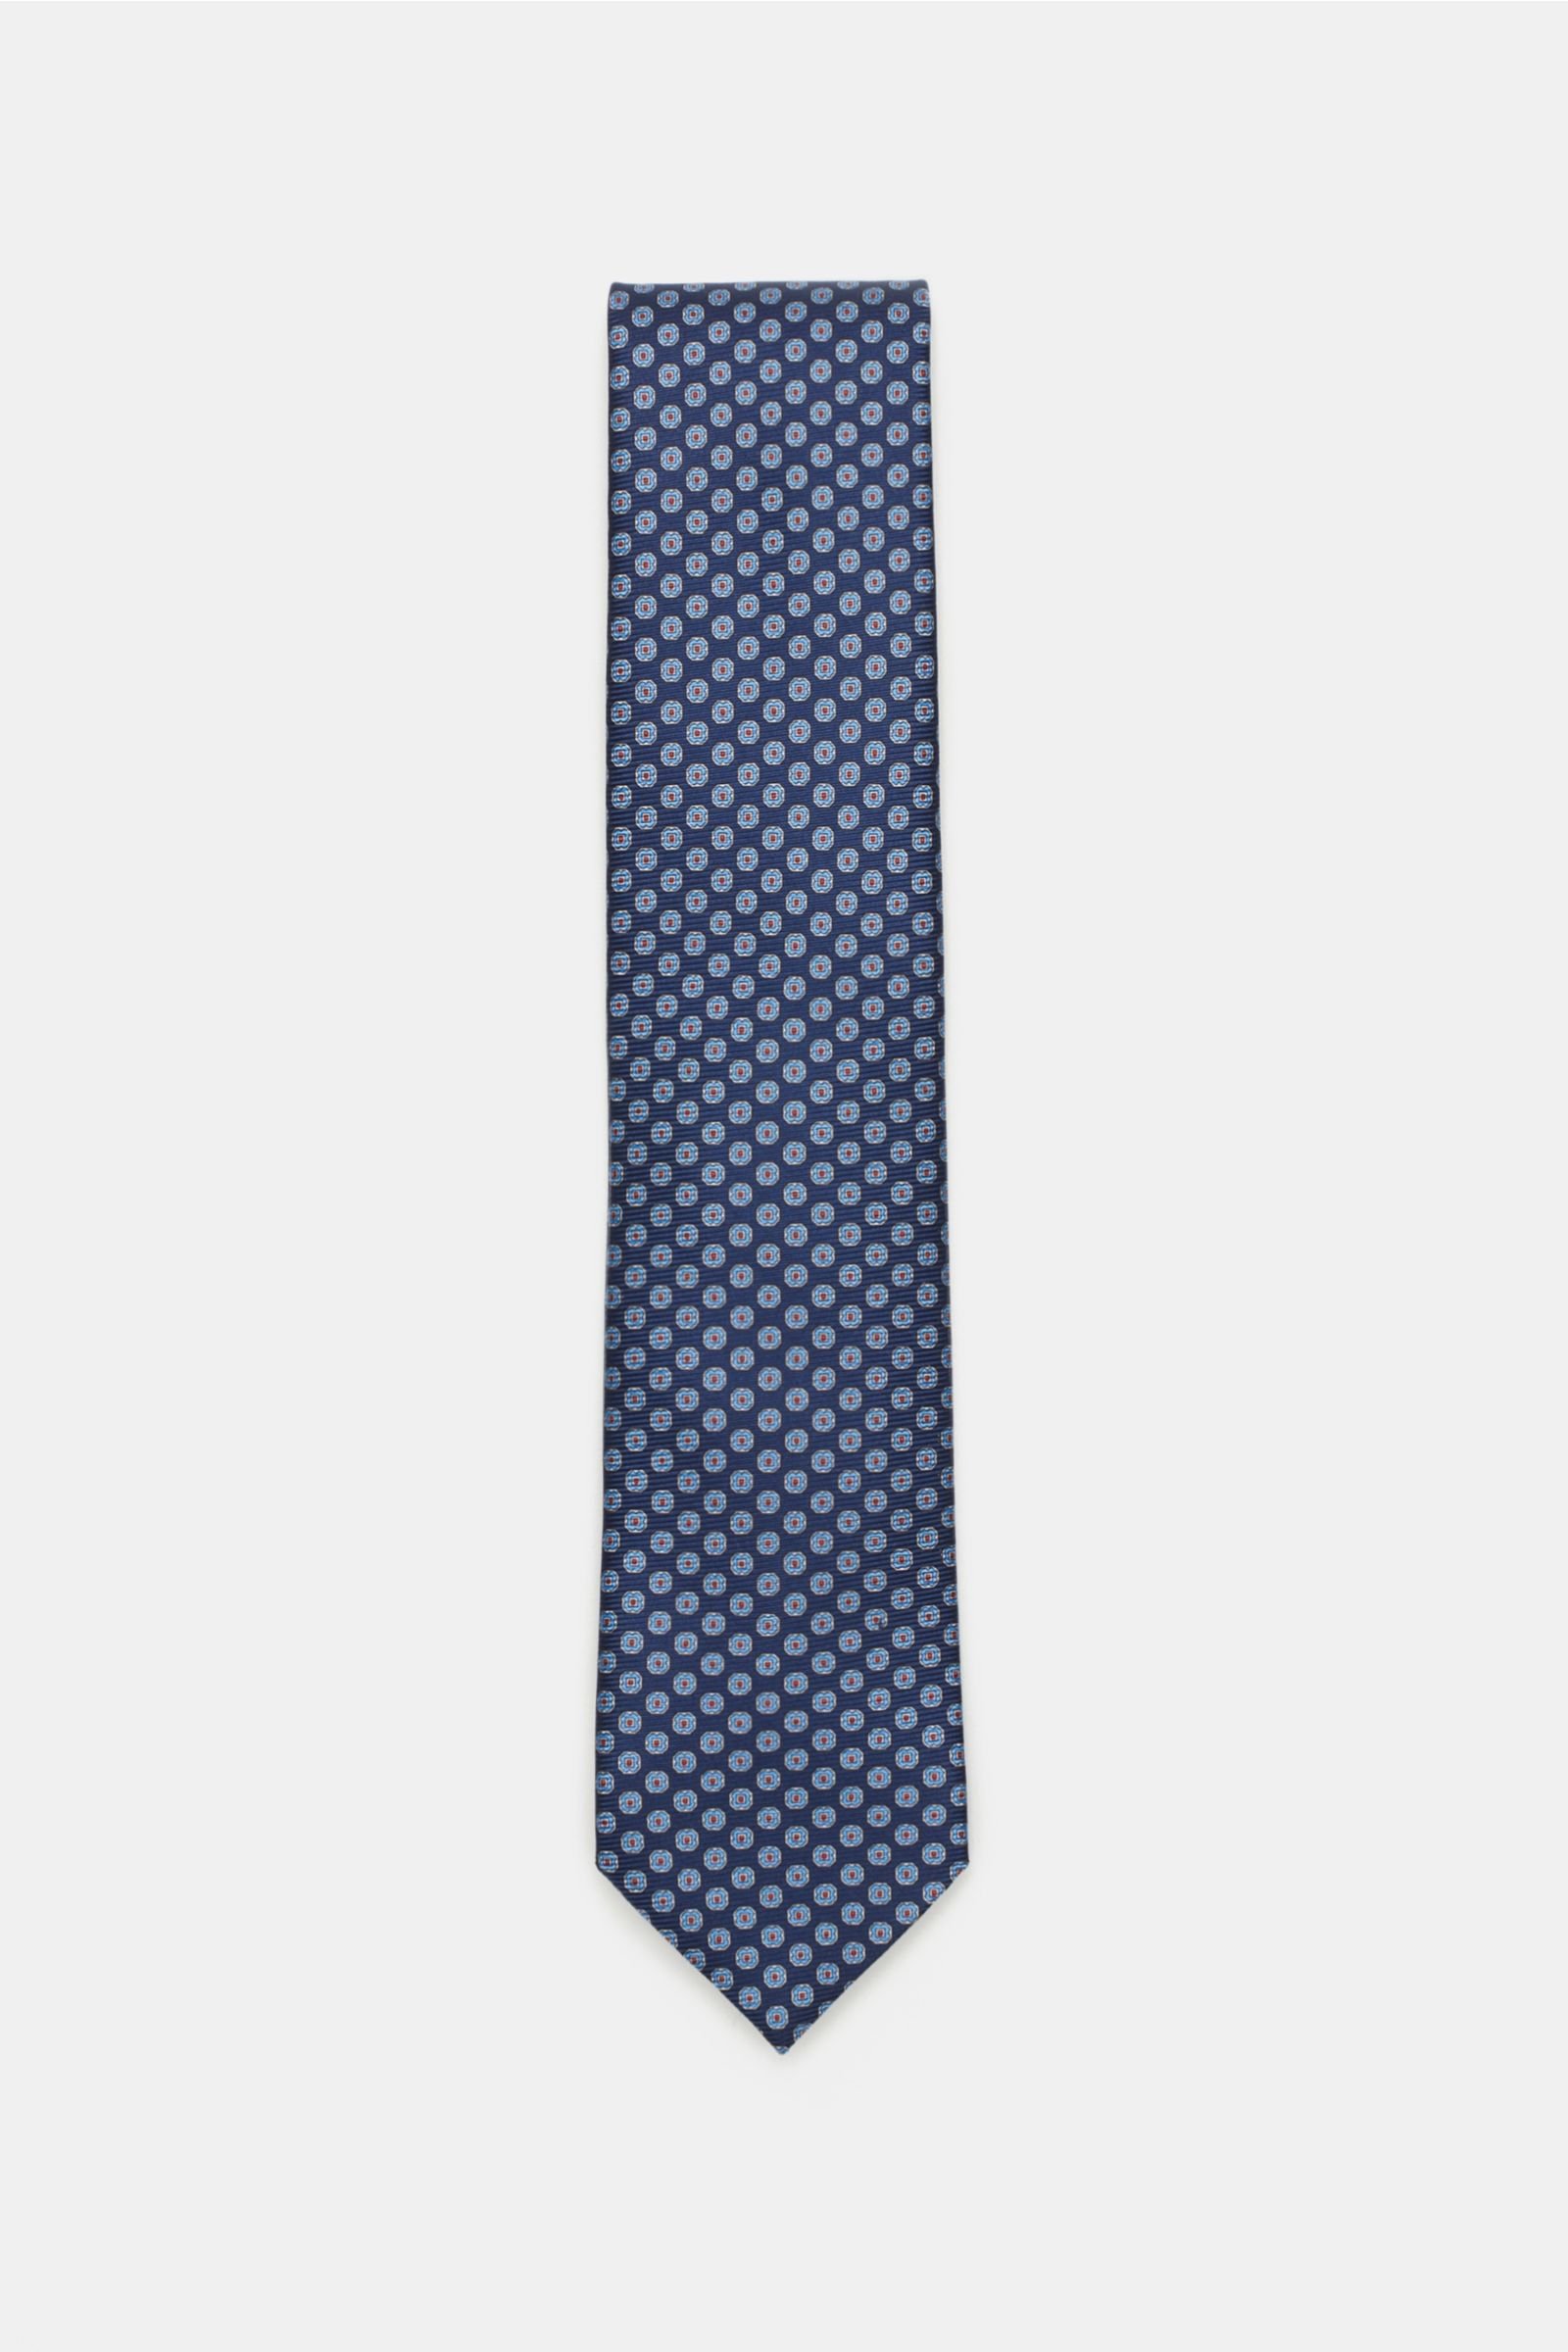 Silk tie teal patterned